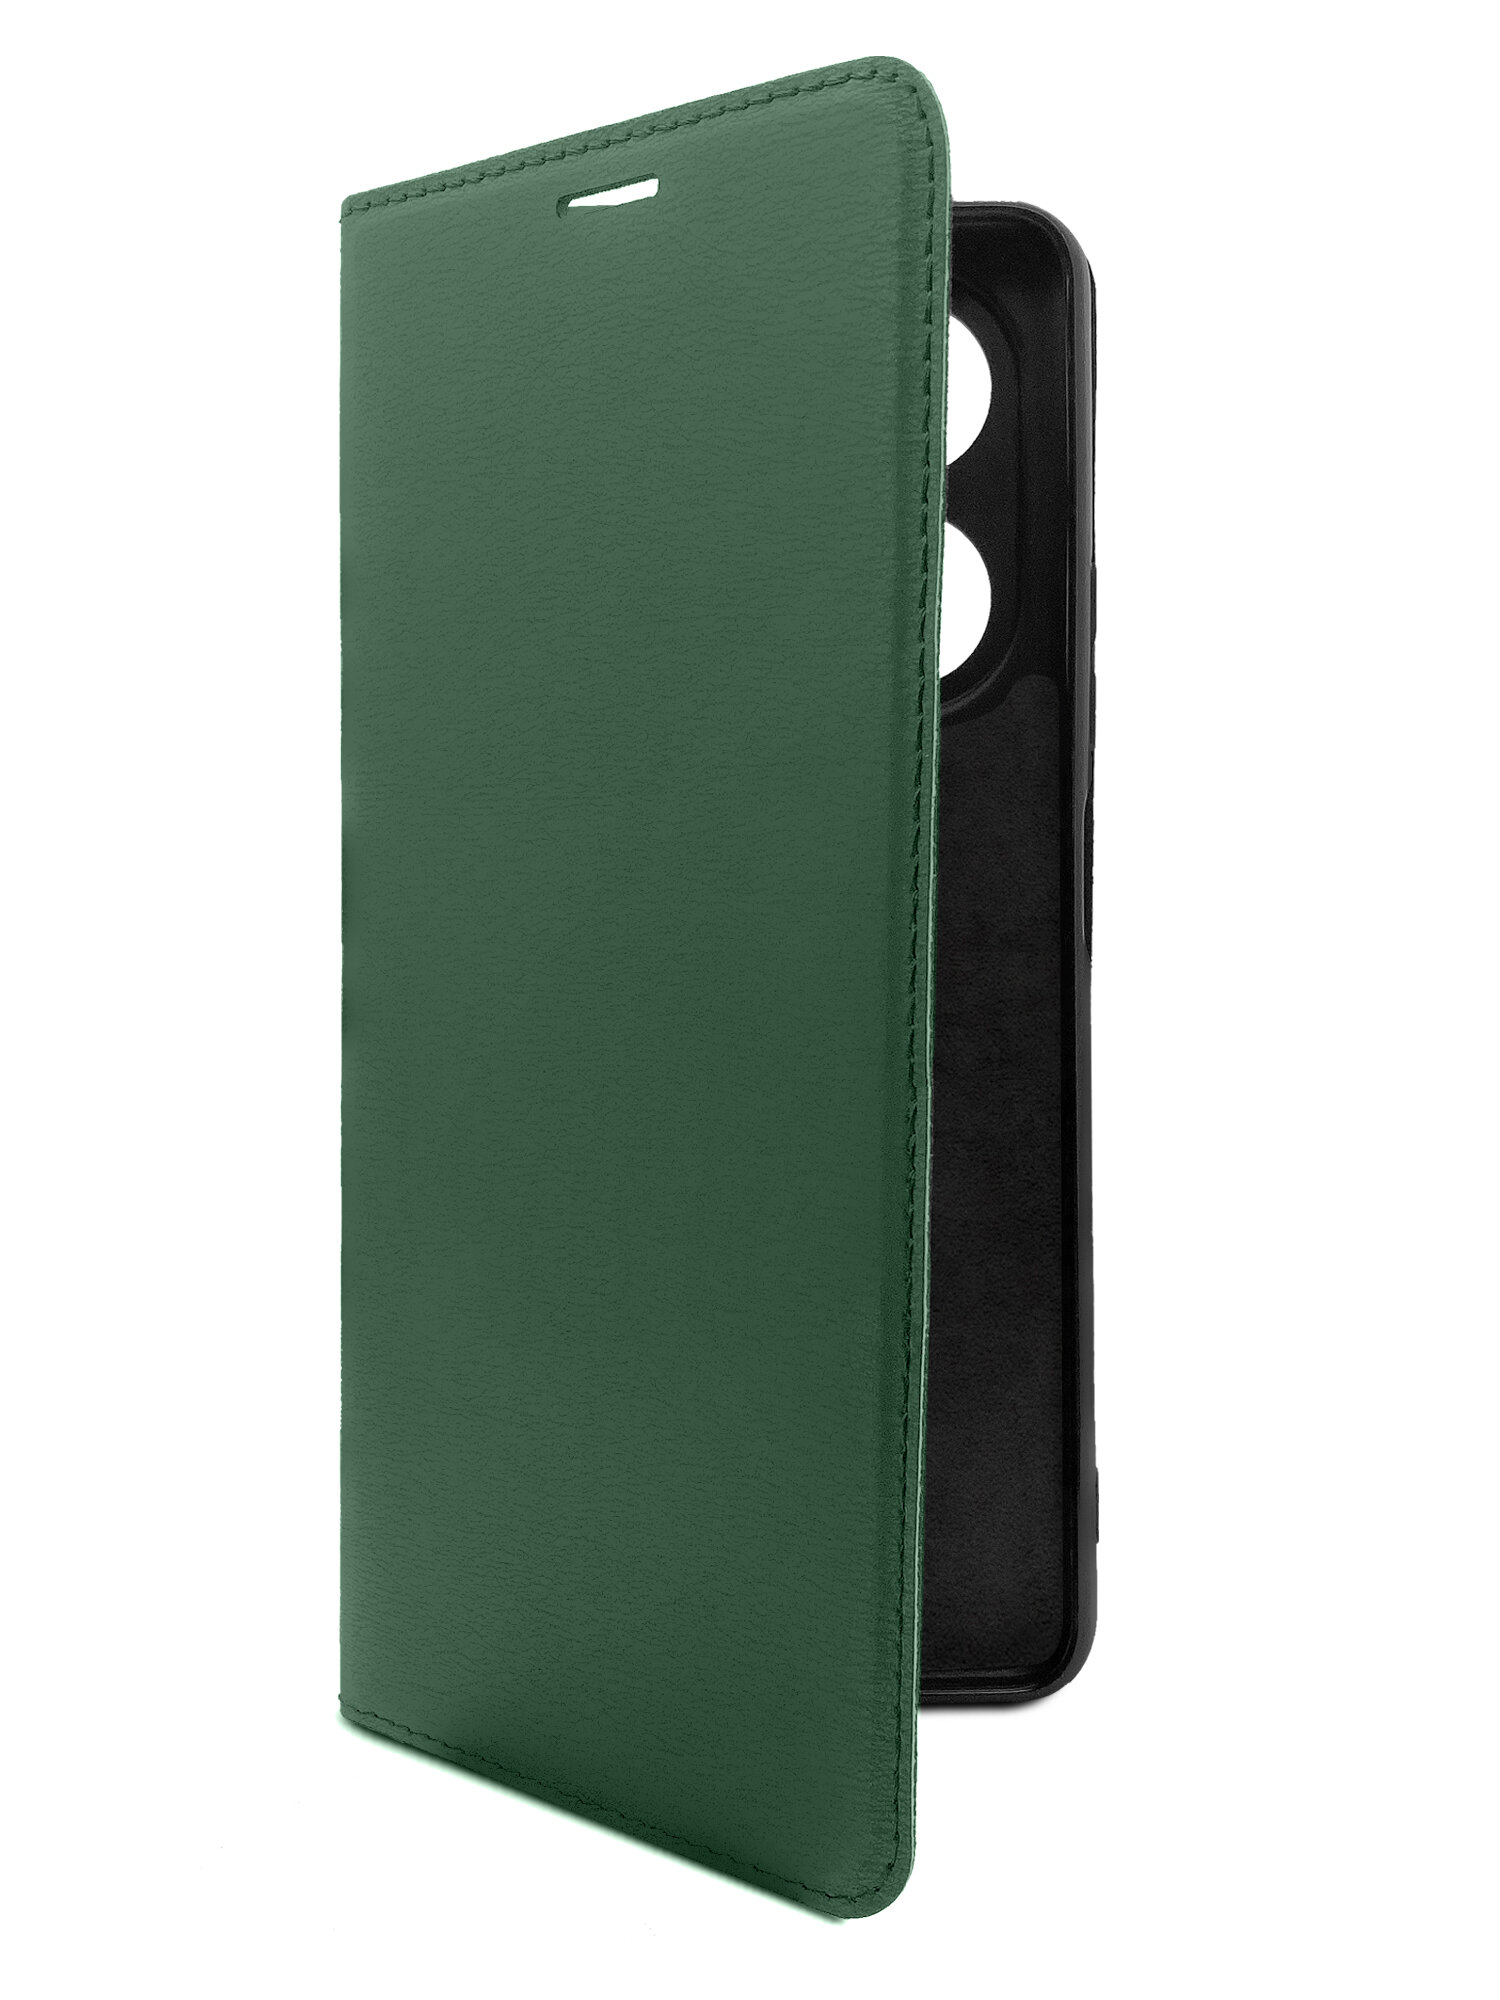 Чехол на Infinix HOT 40 Pro (Инфиникс ХОТ 40 Про) зеленый опал книжка эко-кожа с функцией подставки отделением для карт и магнитами Book Case, Brozo